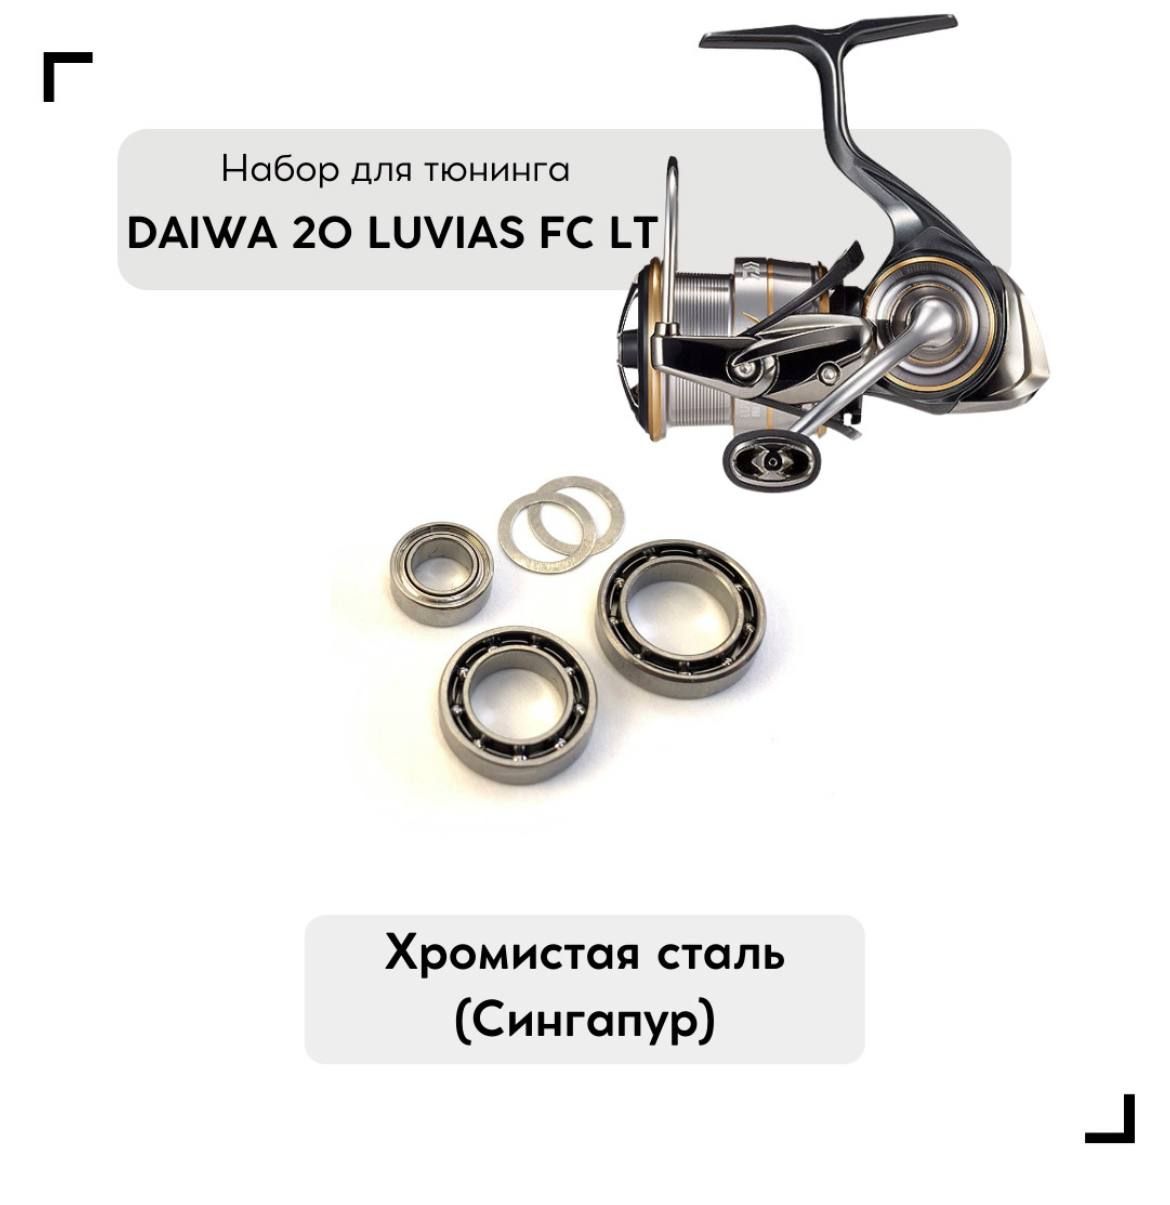 Daiwa 20 Luvias Lt – купить в интернет-магазине OZON по низкой цене